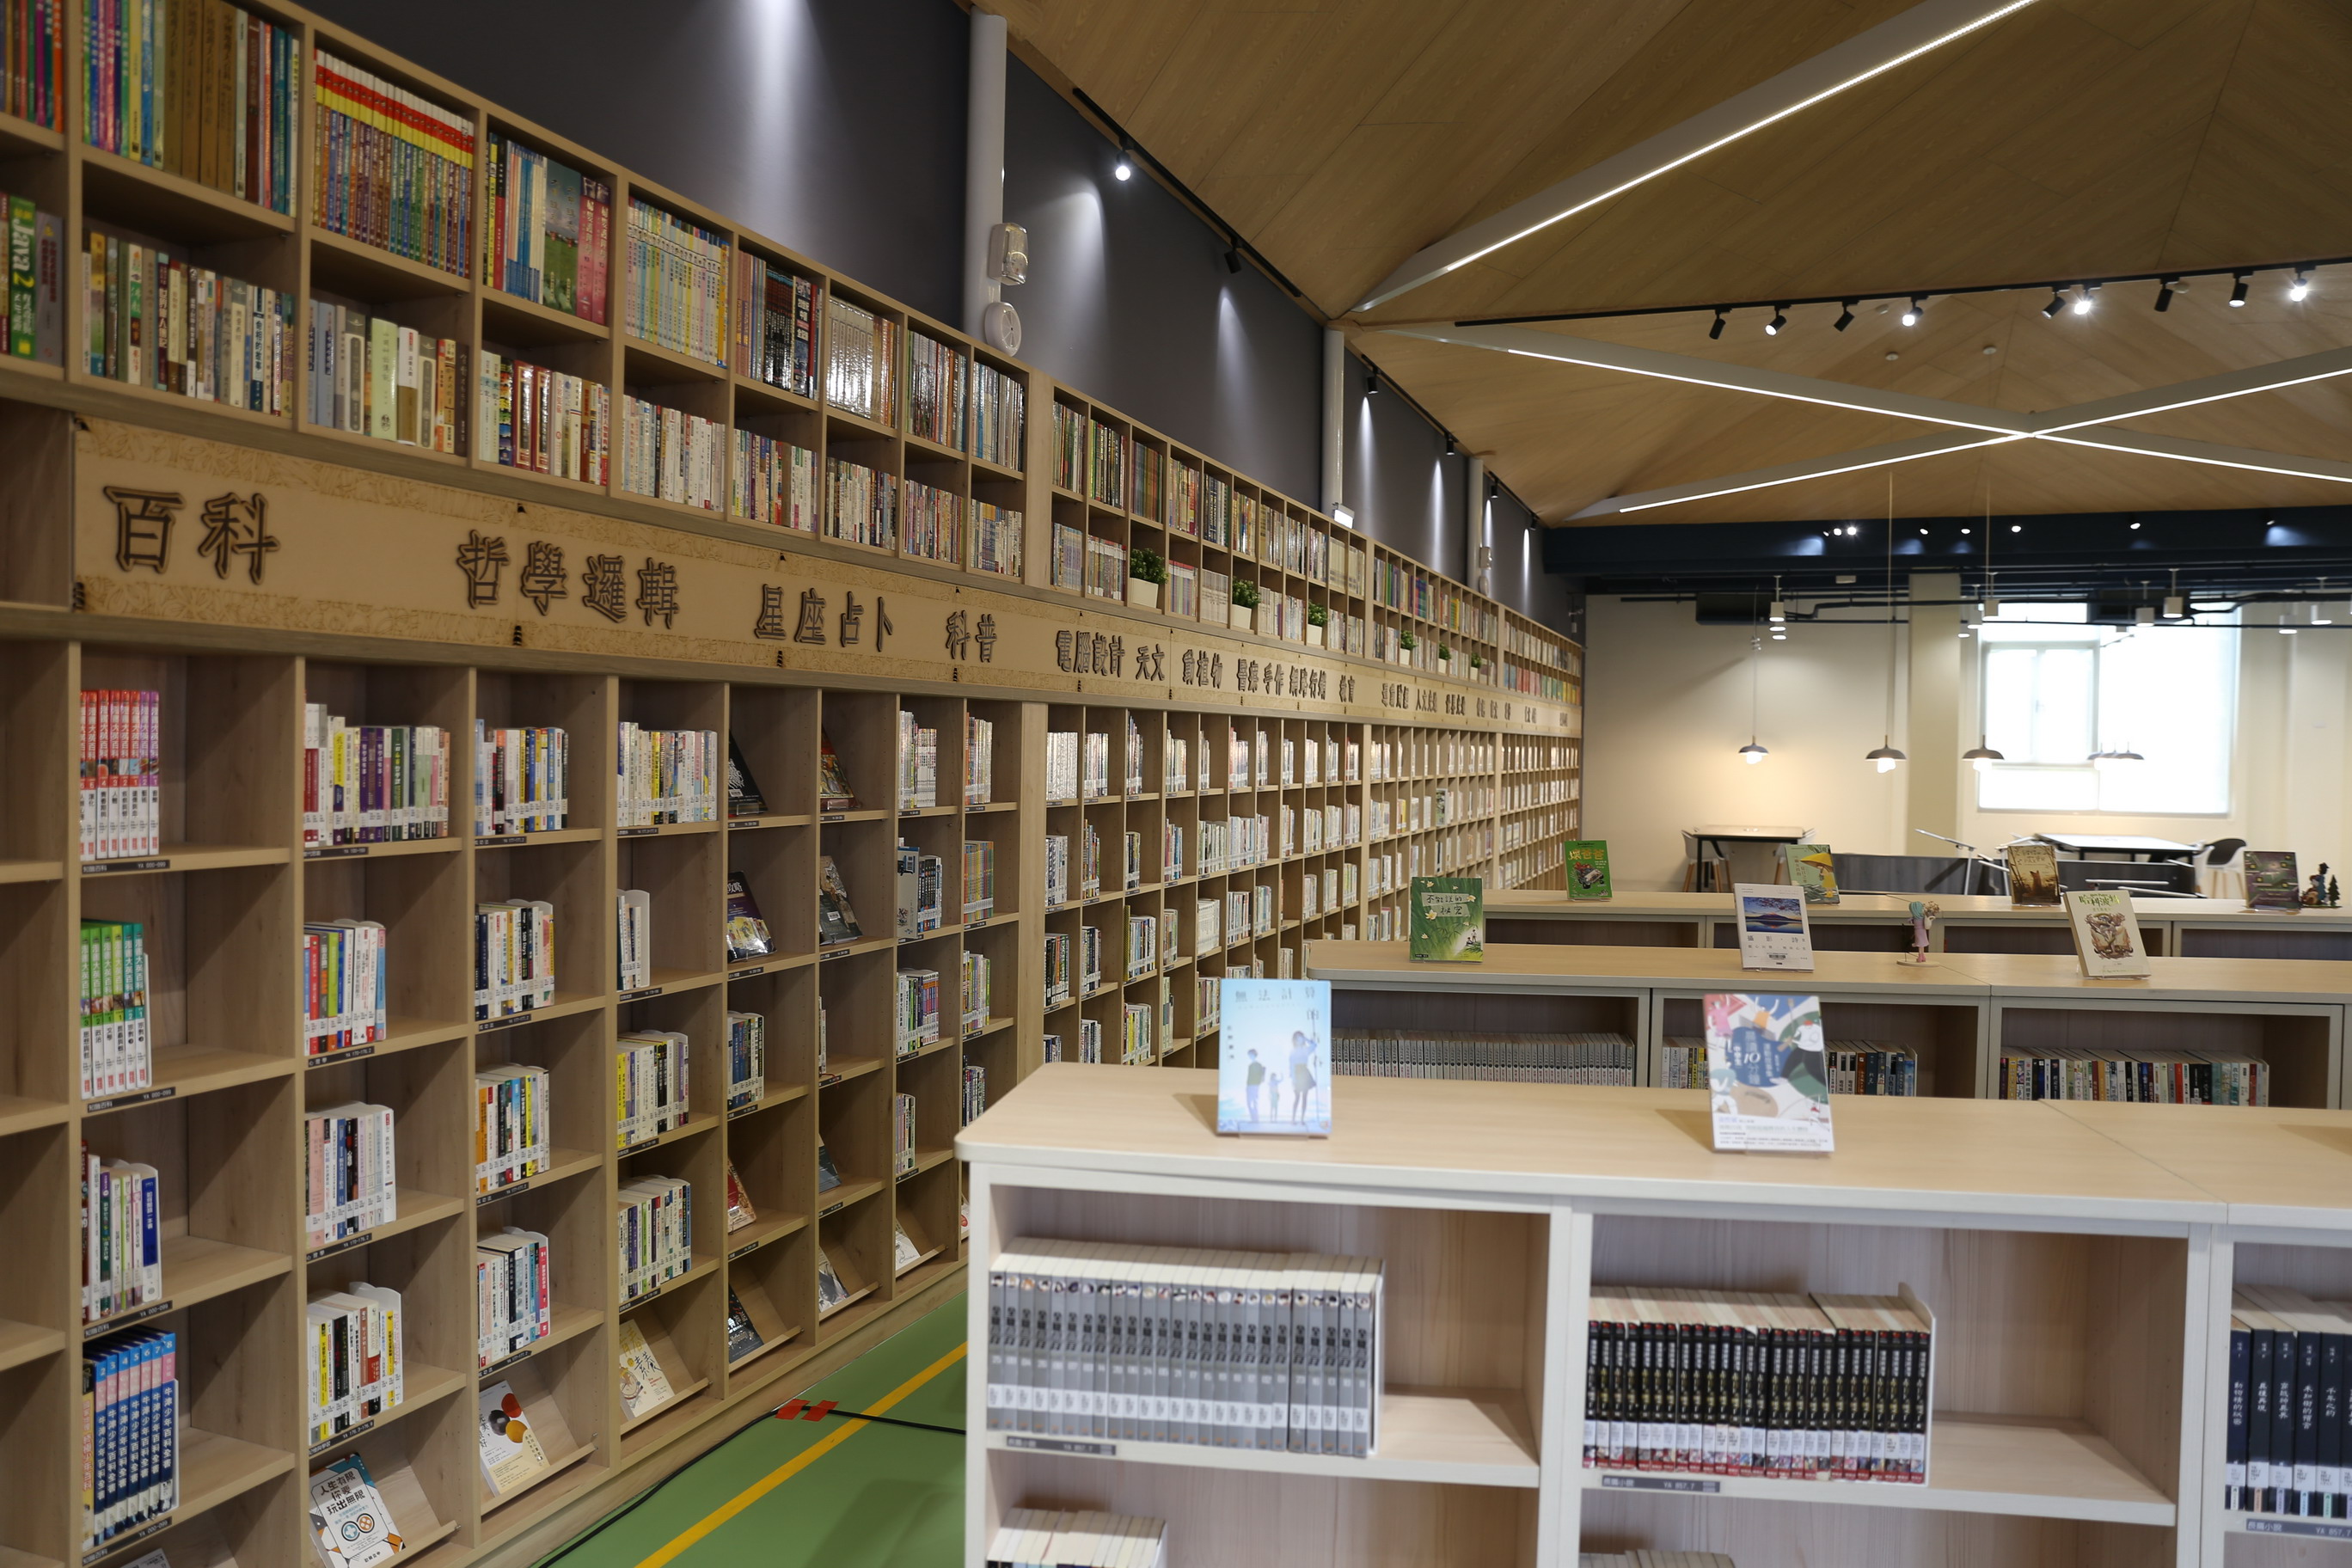 ห้องสมุดประชาชนเมืองไทจงมีแผนที่จะจัดซื้อหนังสือฉบับภาษาเอเชียตะวันออกเฉียงใต้ เช่น ไทย เวียดนาม และอินโดนีเซีย ภาพจาก／สำนักวัฒนธรรม รัฐบาลเมืองไถจง (Cultural Affairs Bureau, Taichung City Government)